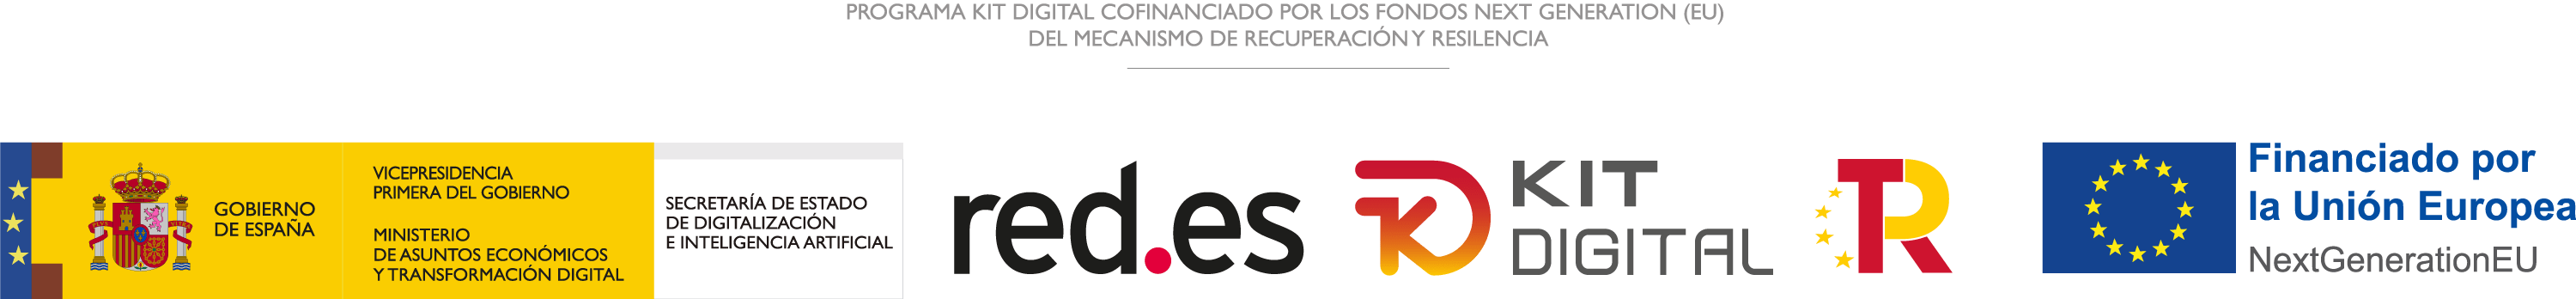 Programa Kit Digital cofinançat pels fons Next Generation (EU) del mecanisme de Recuperació i Resiliència